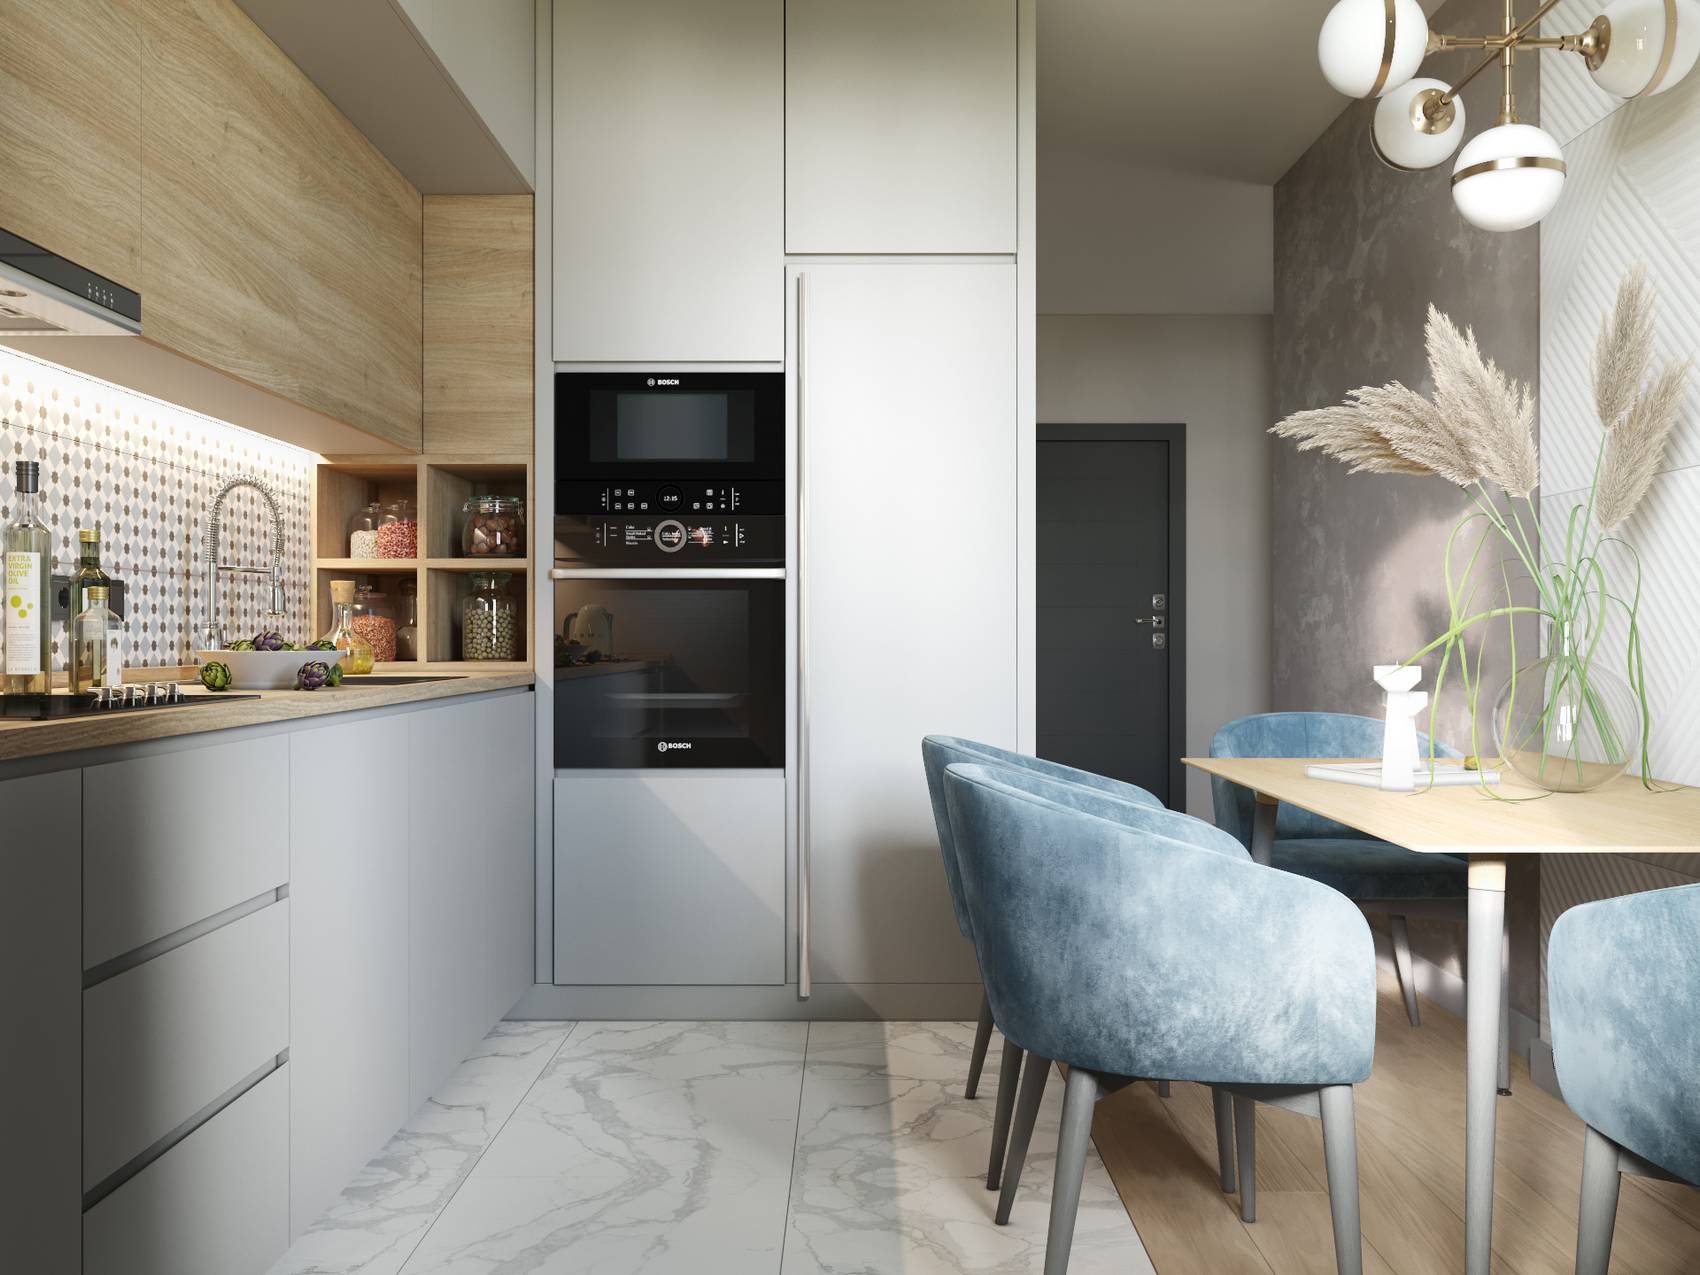 Để tạo không gian riêng tư, phòng bếp và khu vực ăn uống tách biệt hoàn toàn với phòng khách. Bếp thiết kế kiểu chữ L với sàn nhà lát gạch sáng bóng, dễ dàng vệ sinh.